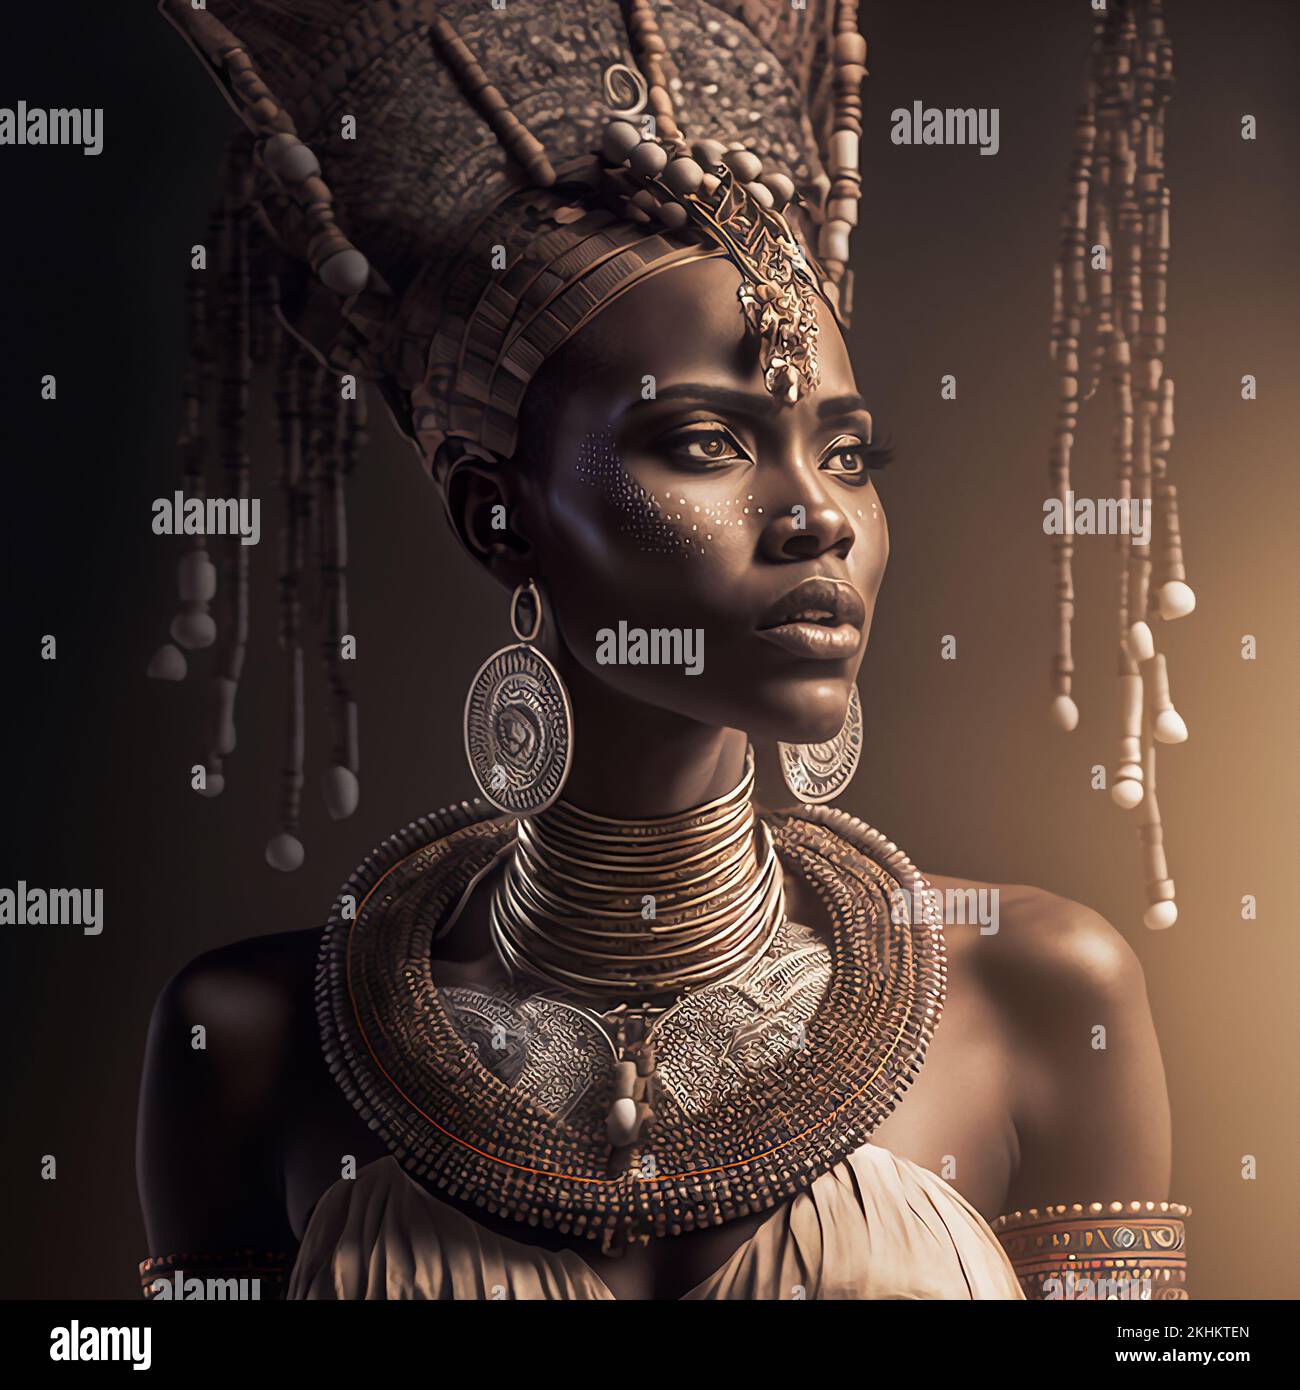 Ilustración de la antigua Diosa Africana, venerada por muchos por sus habilidades para curar a los enfermos, promover la prosperidad y traer fertilidad. Foto de stock